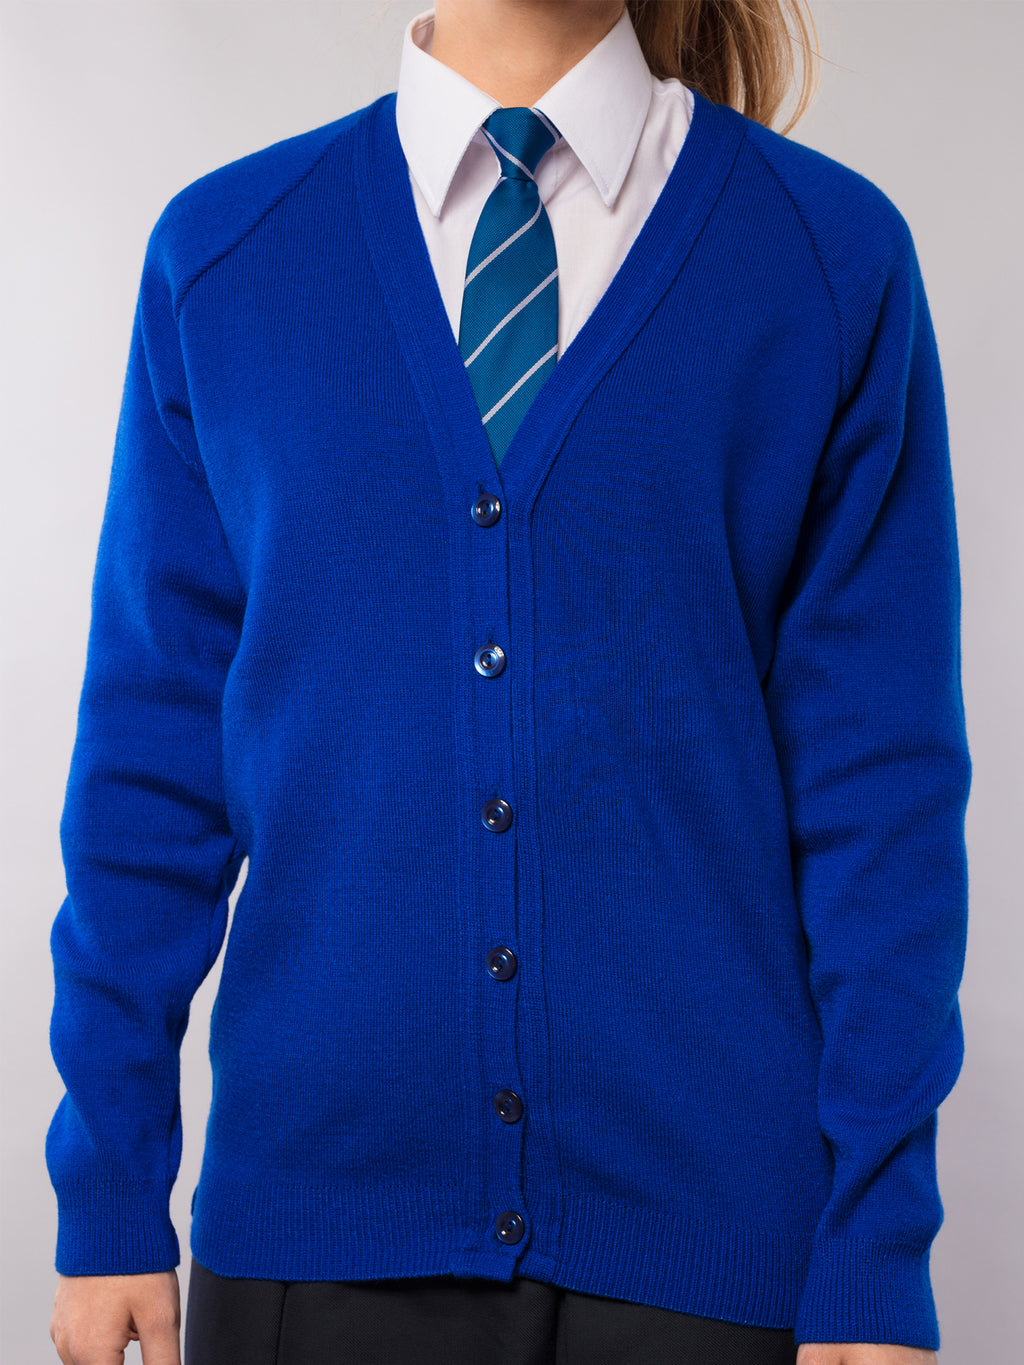 school-cardigan-royal-blue